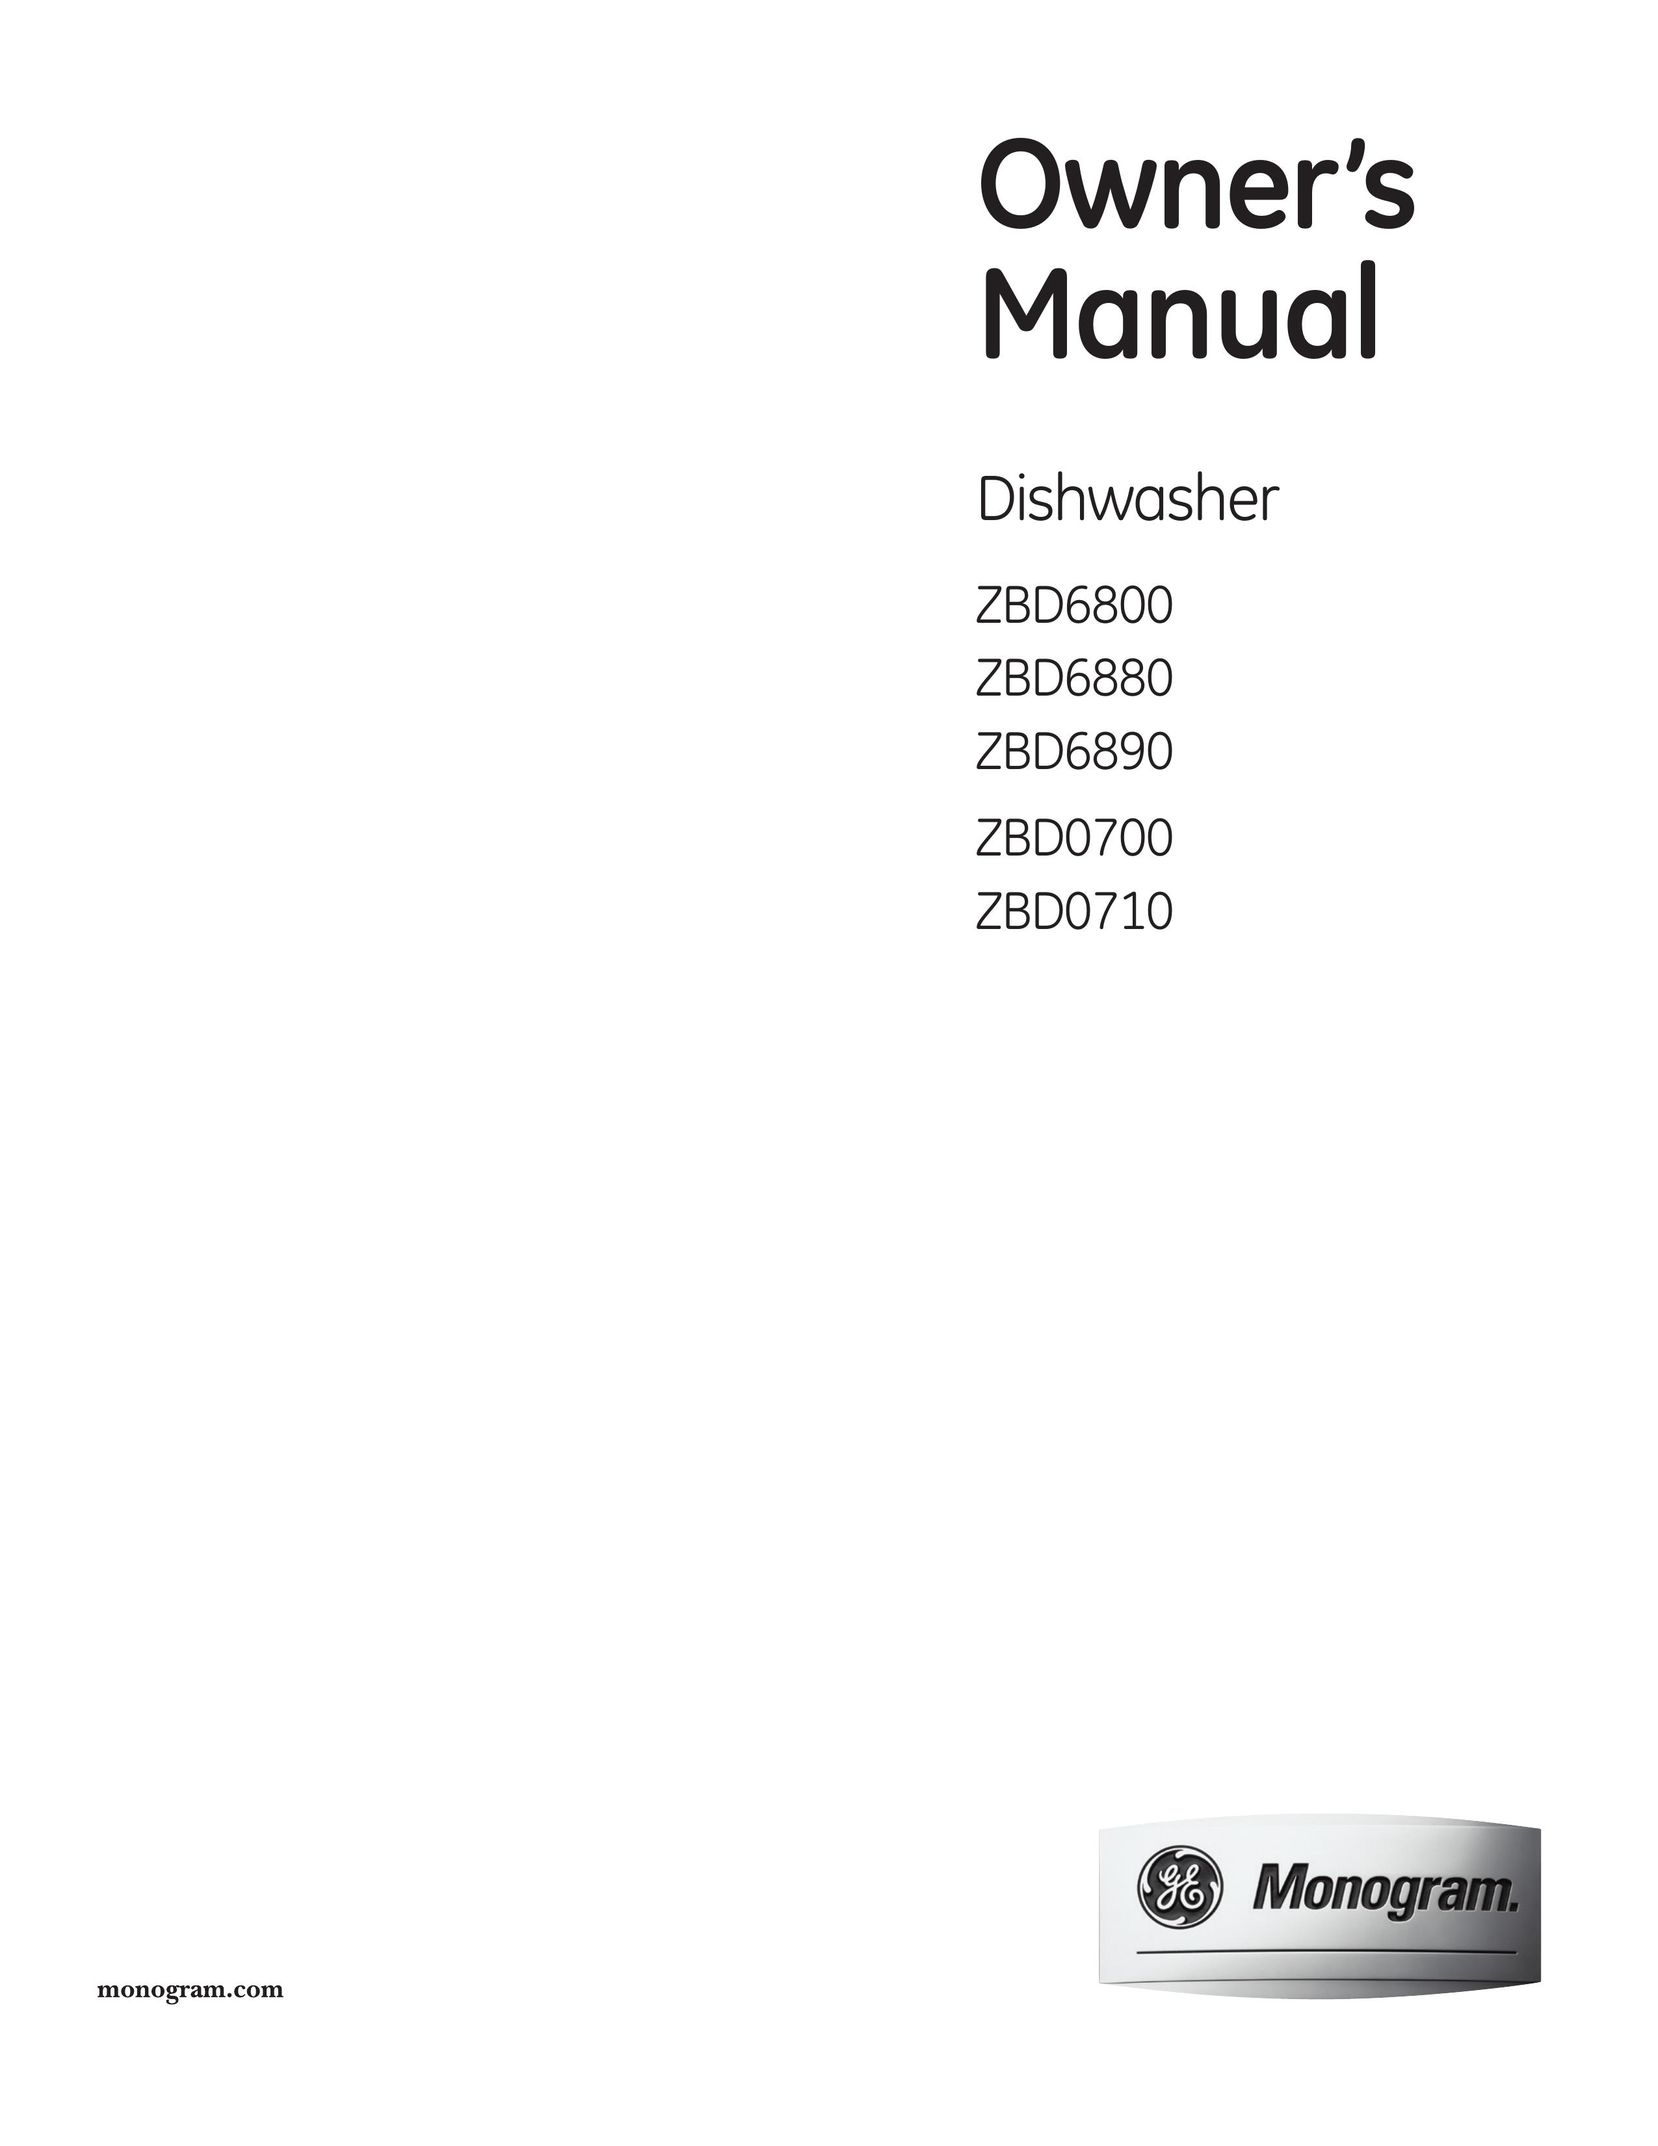 GE Monogram ZBD0700 Dishwasher User Manual